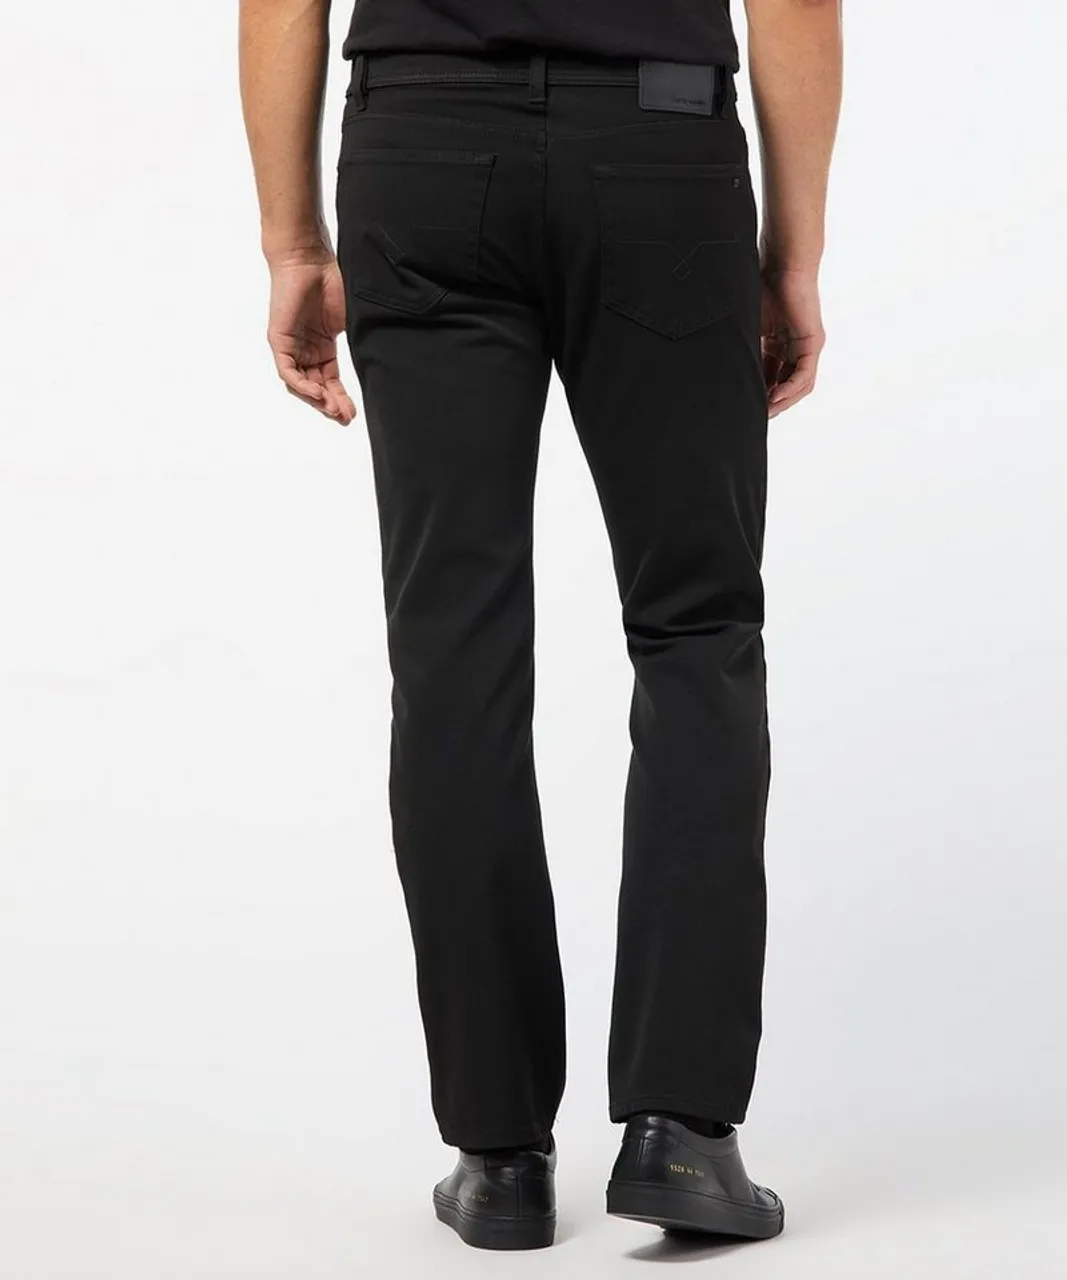 Pierre Cardin 5-Pocket-Jeans PIERRE CARDIN DEAUVILLE black ceramika 3196 237.88 - CERAMICA EDITION